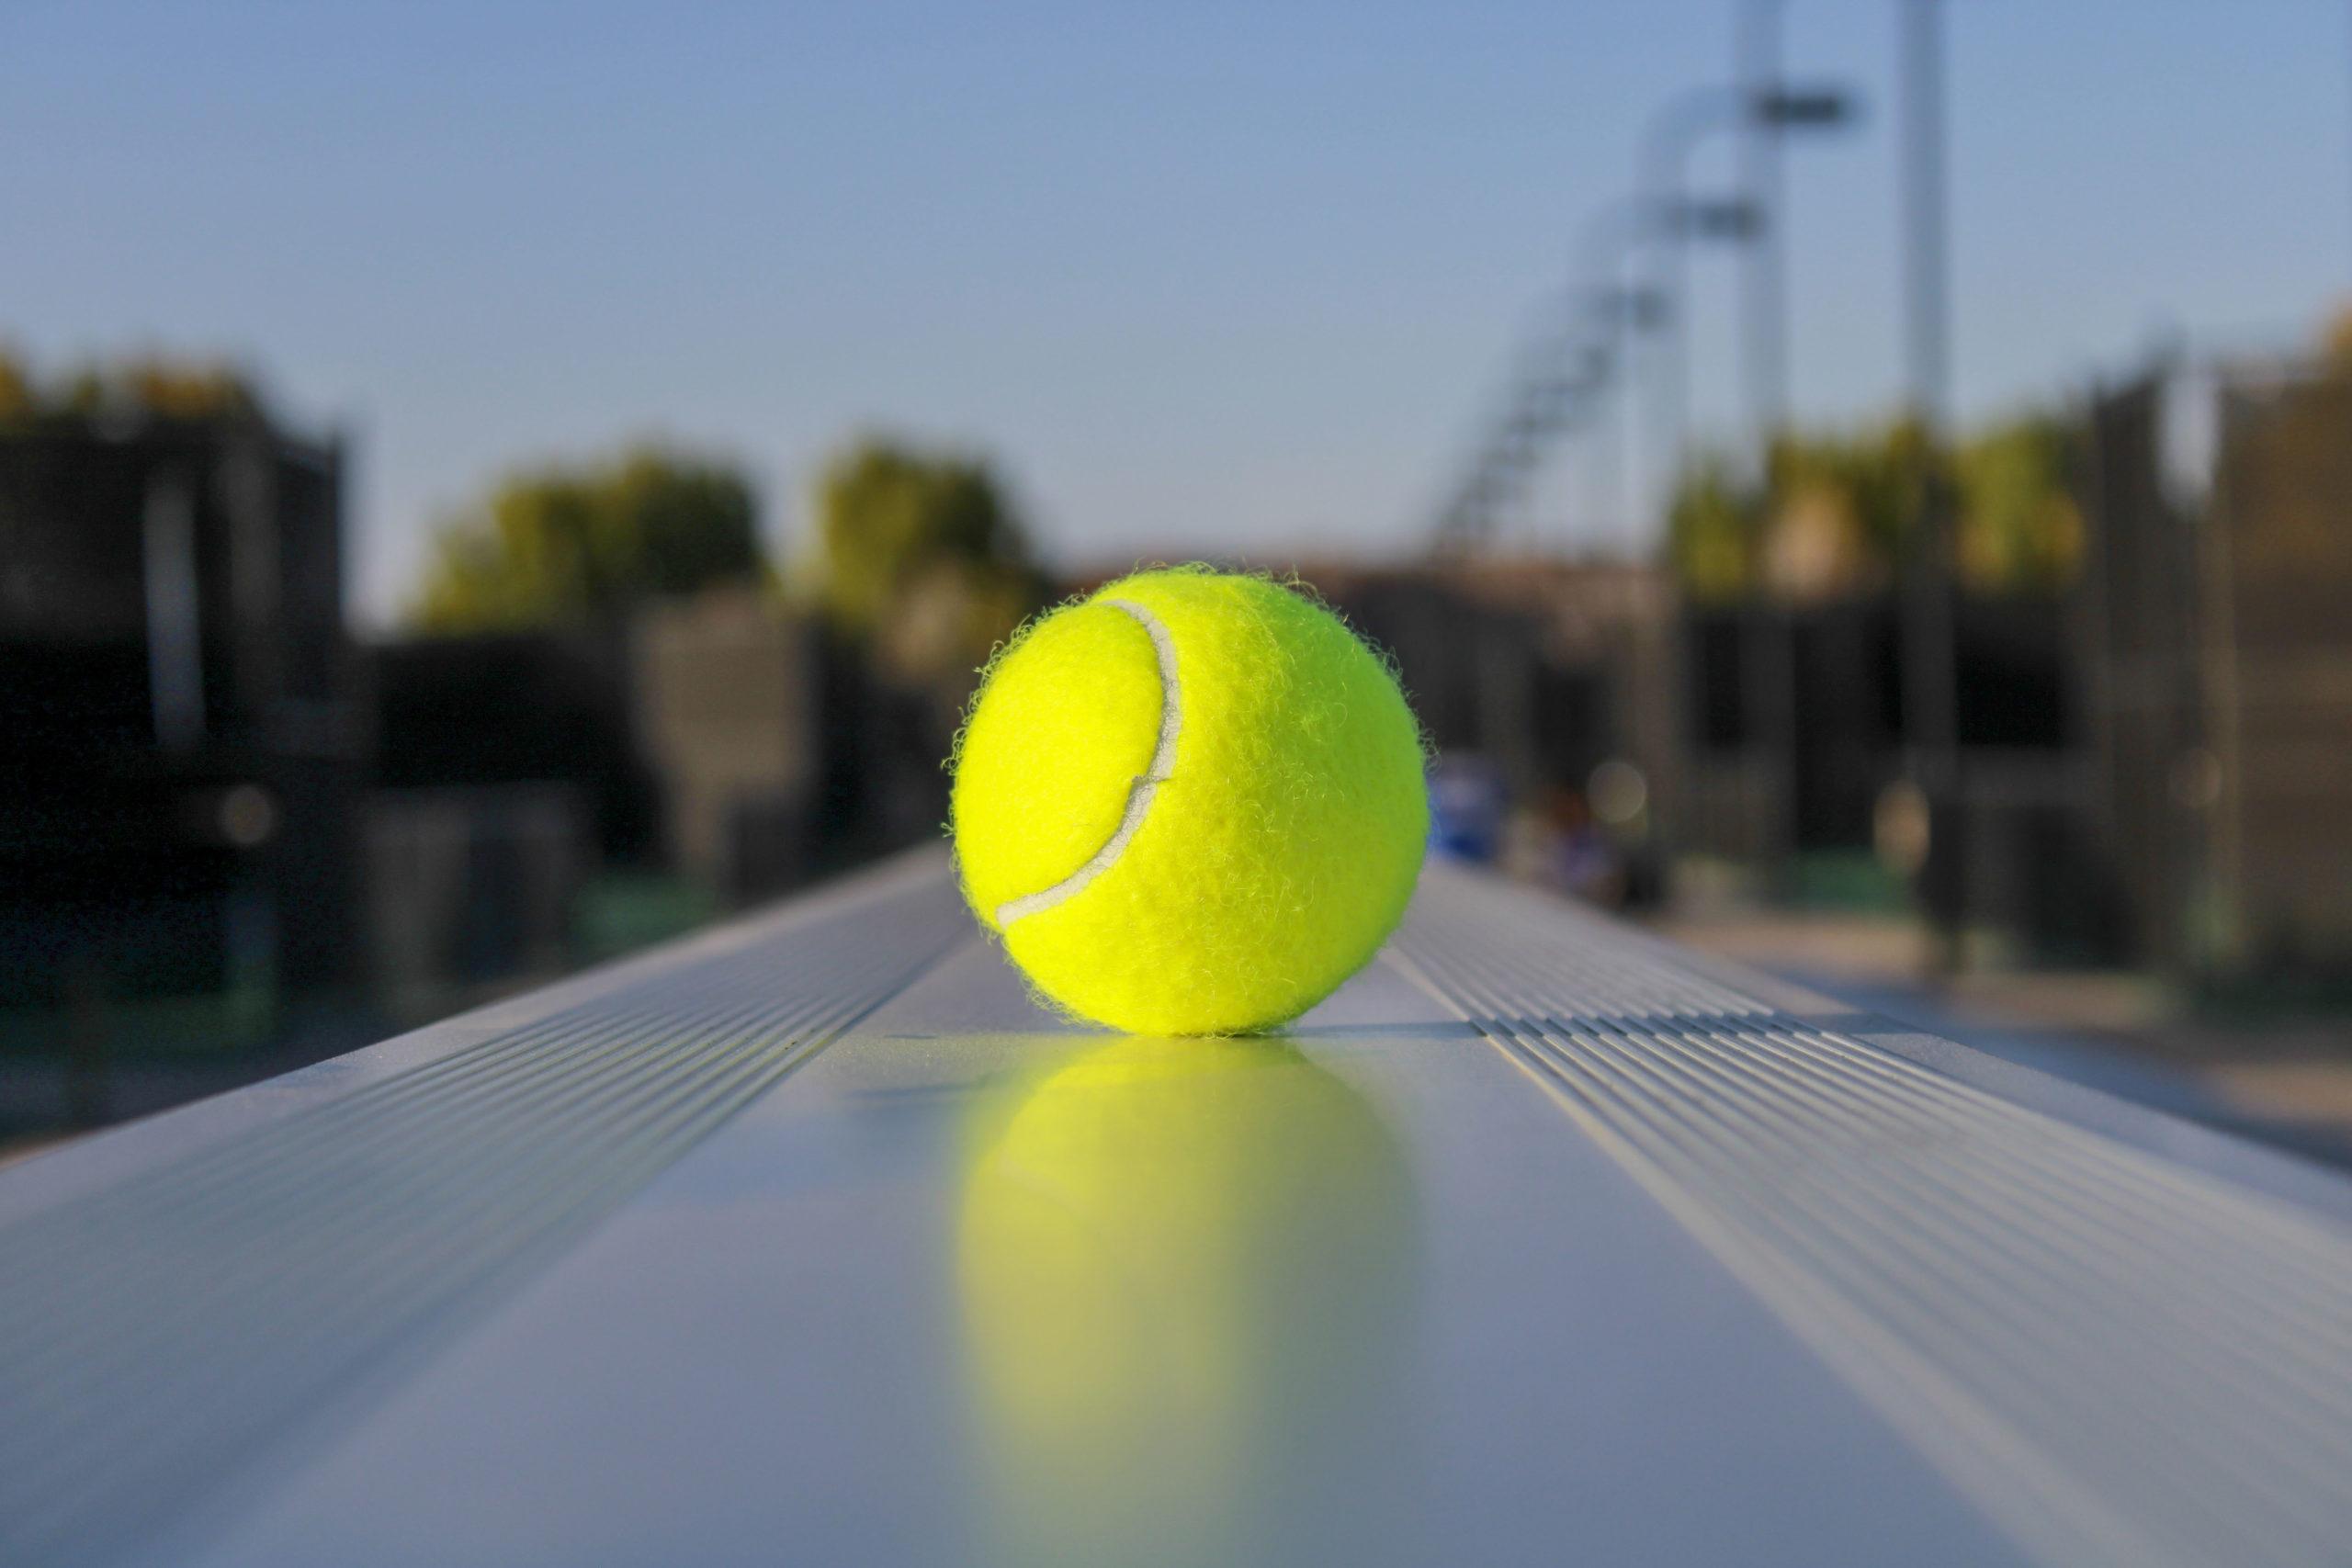 A tennis ball sits on bleachers